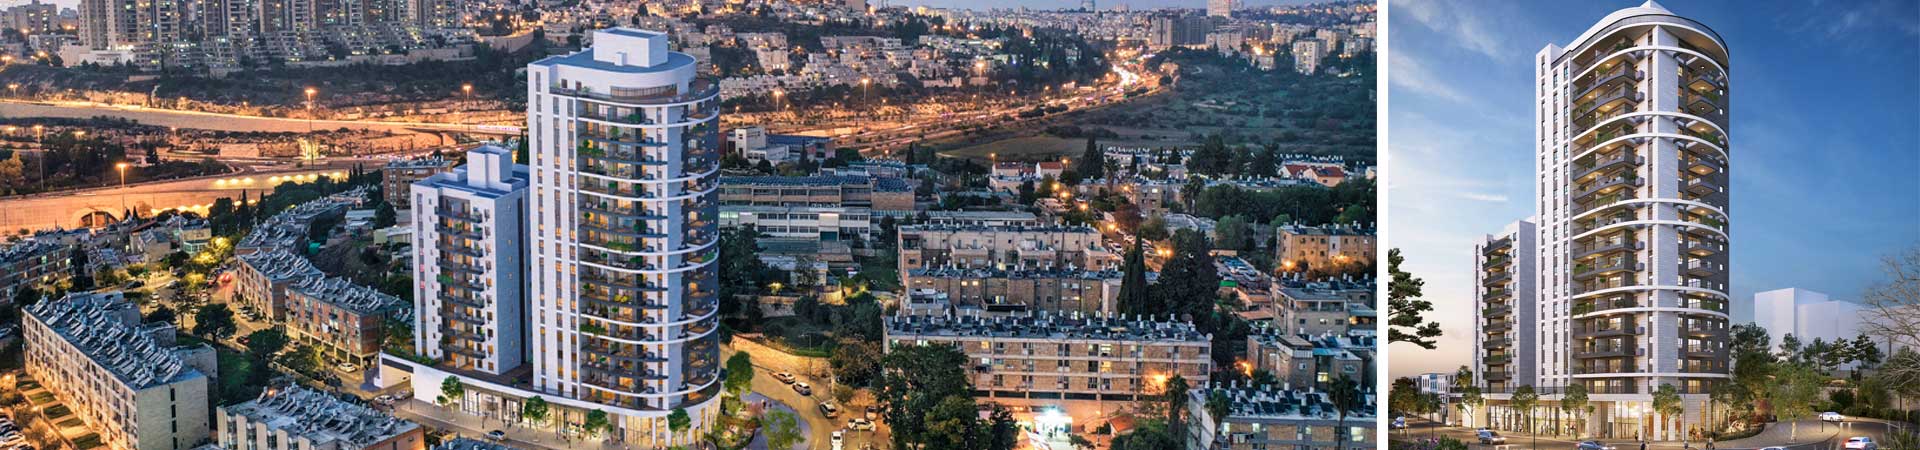 דירות למכירה בירושלים - סביוני קטמון החדשה